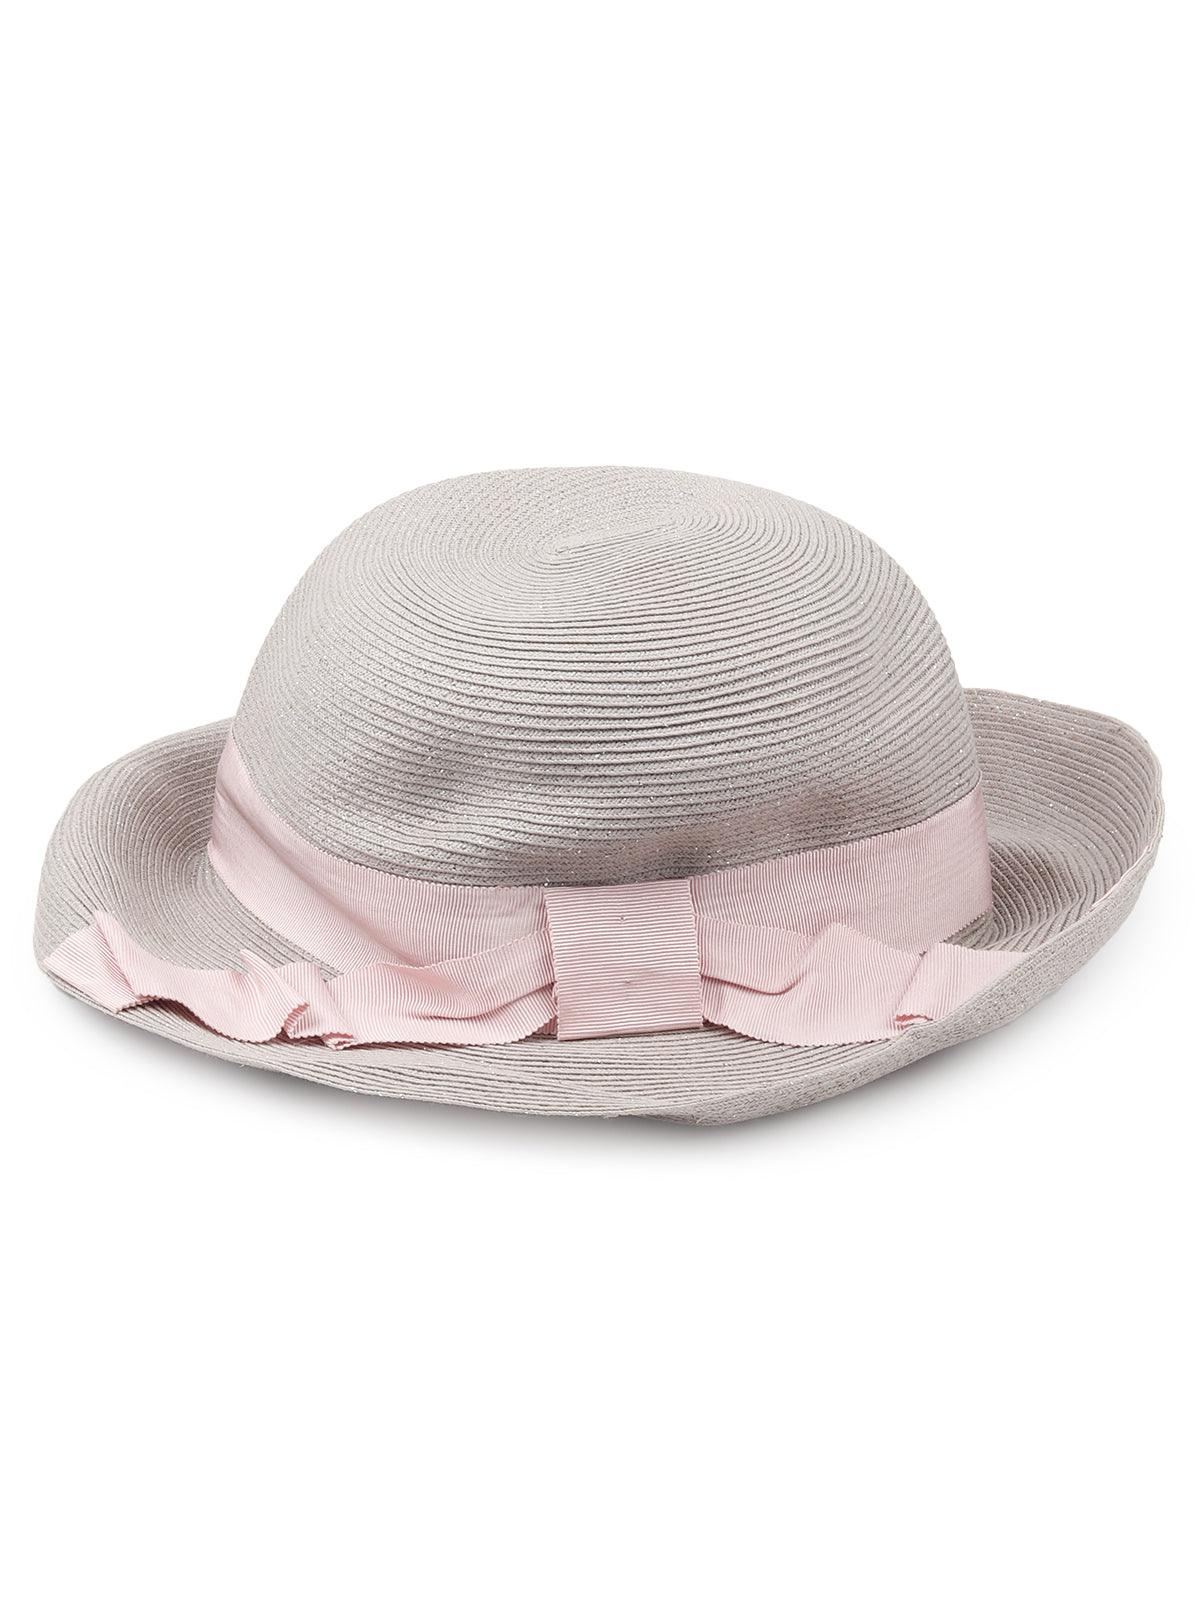 Cute pink hat for women - Odette